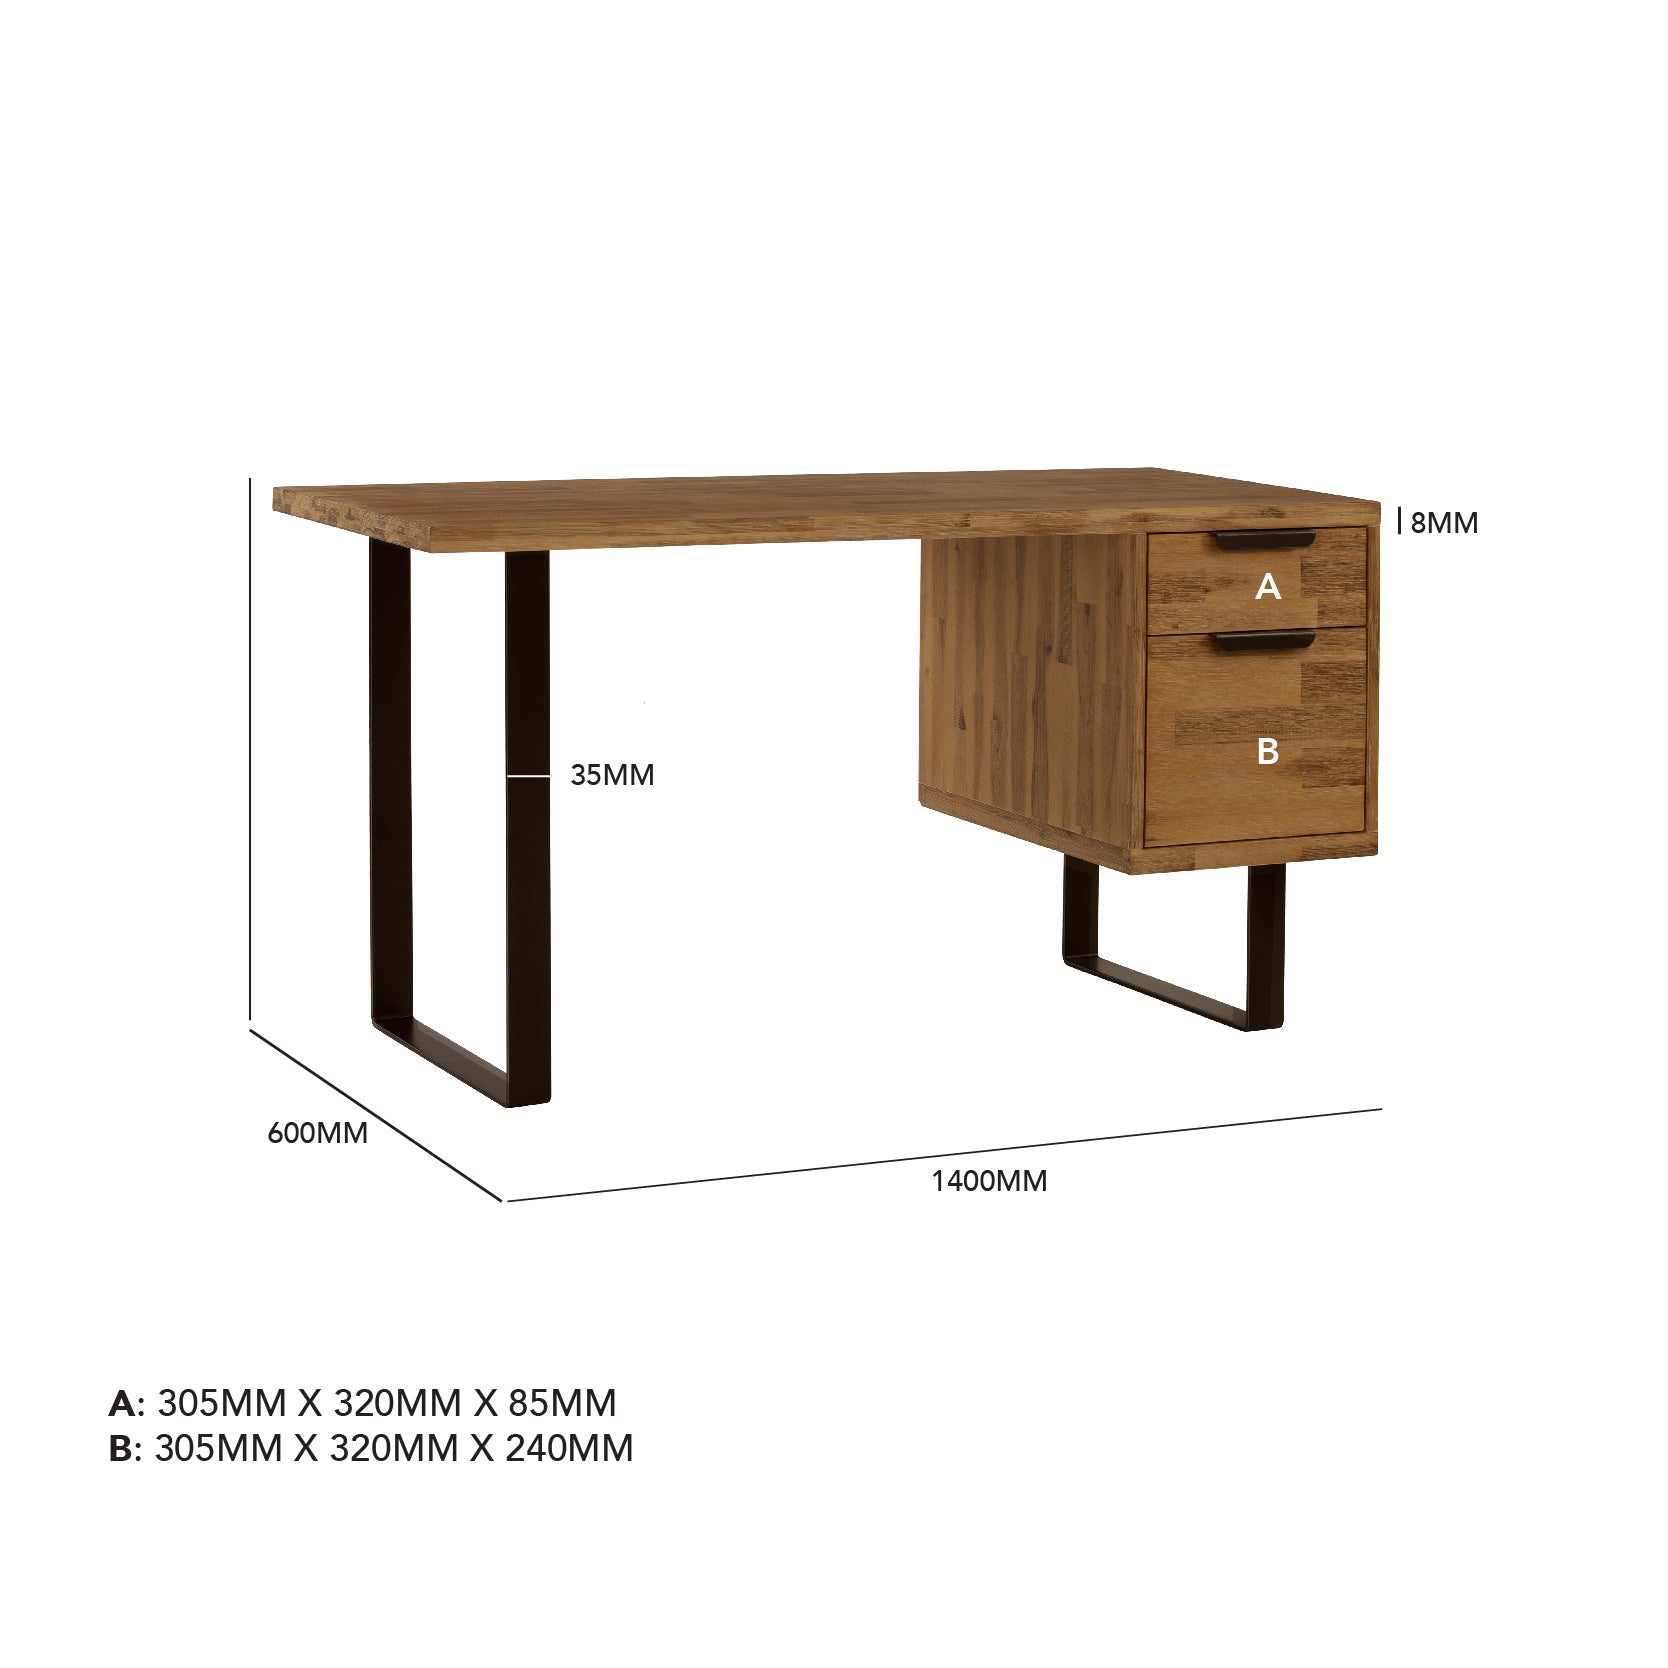 馬來西亞原裝進口實木傢俬 - F系列 - Brighton布萊頓書桌